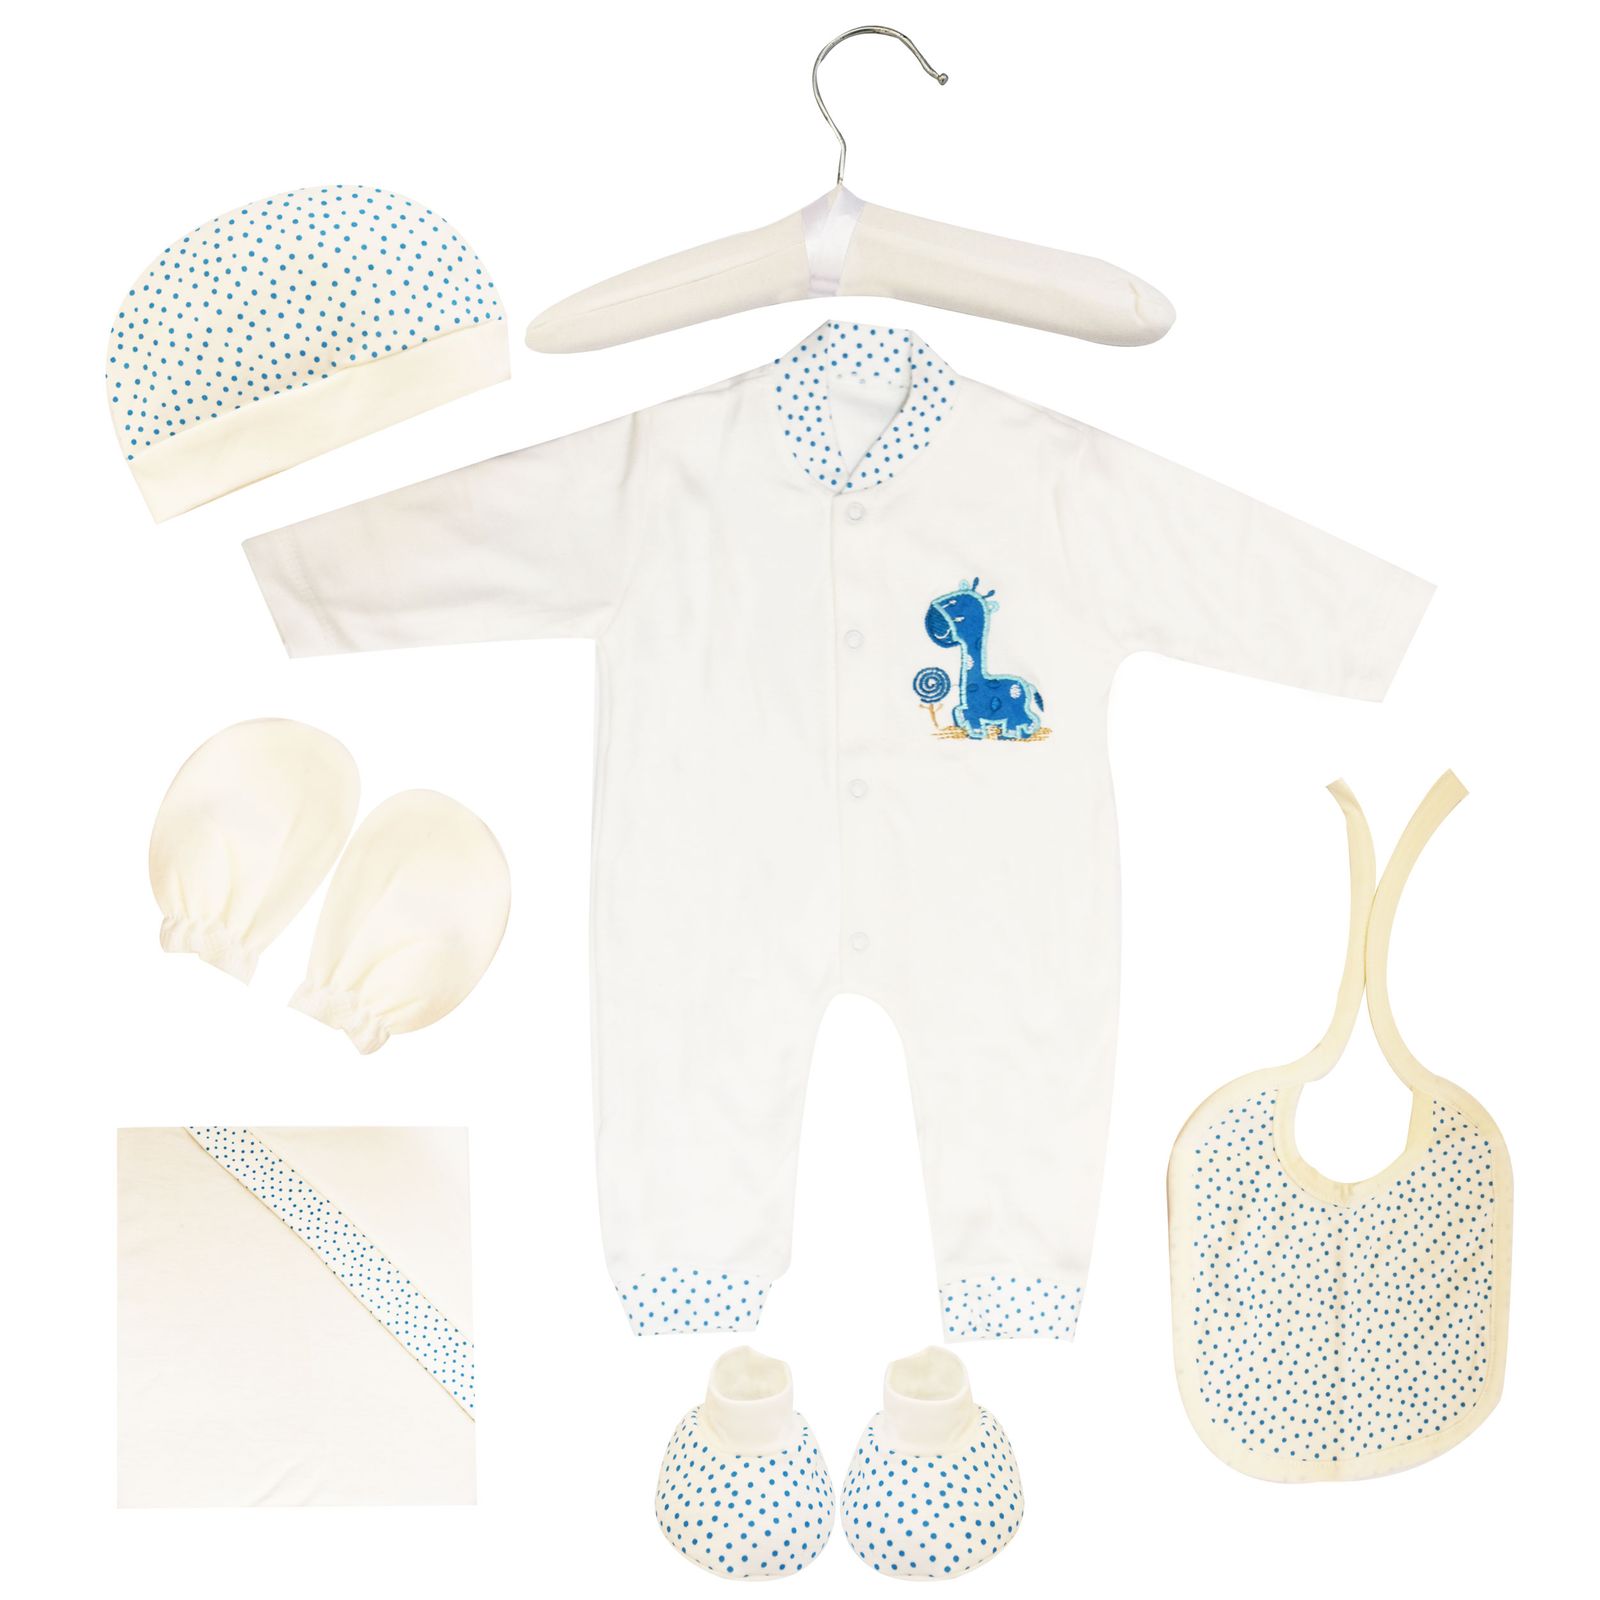  ست 7 تکه لباس نوزادی مادرکر طرح زرافه کد M454.19 -  - 1